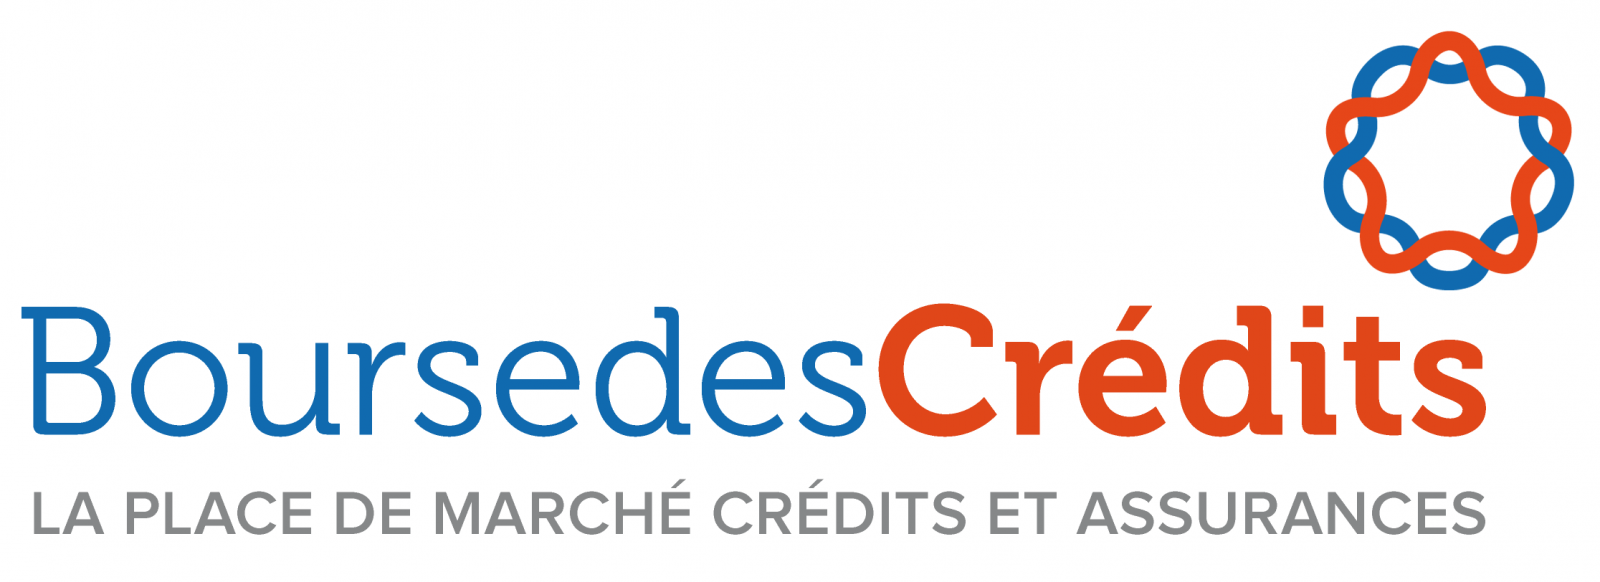 Logo Bourse des Crédits